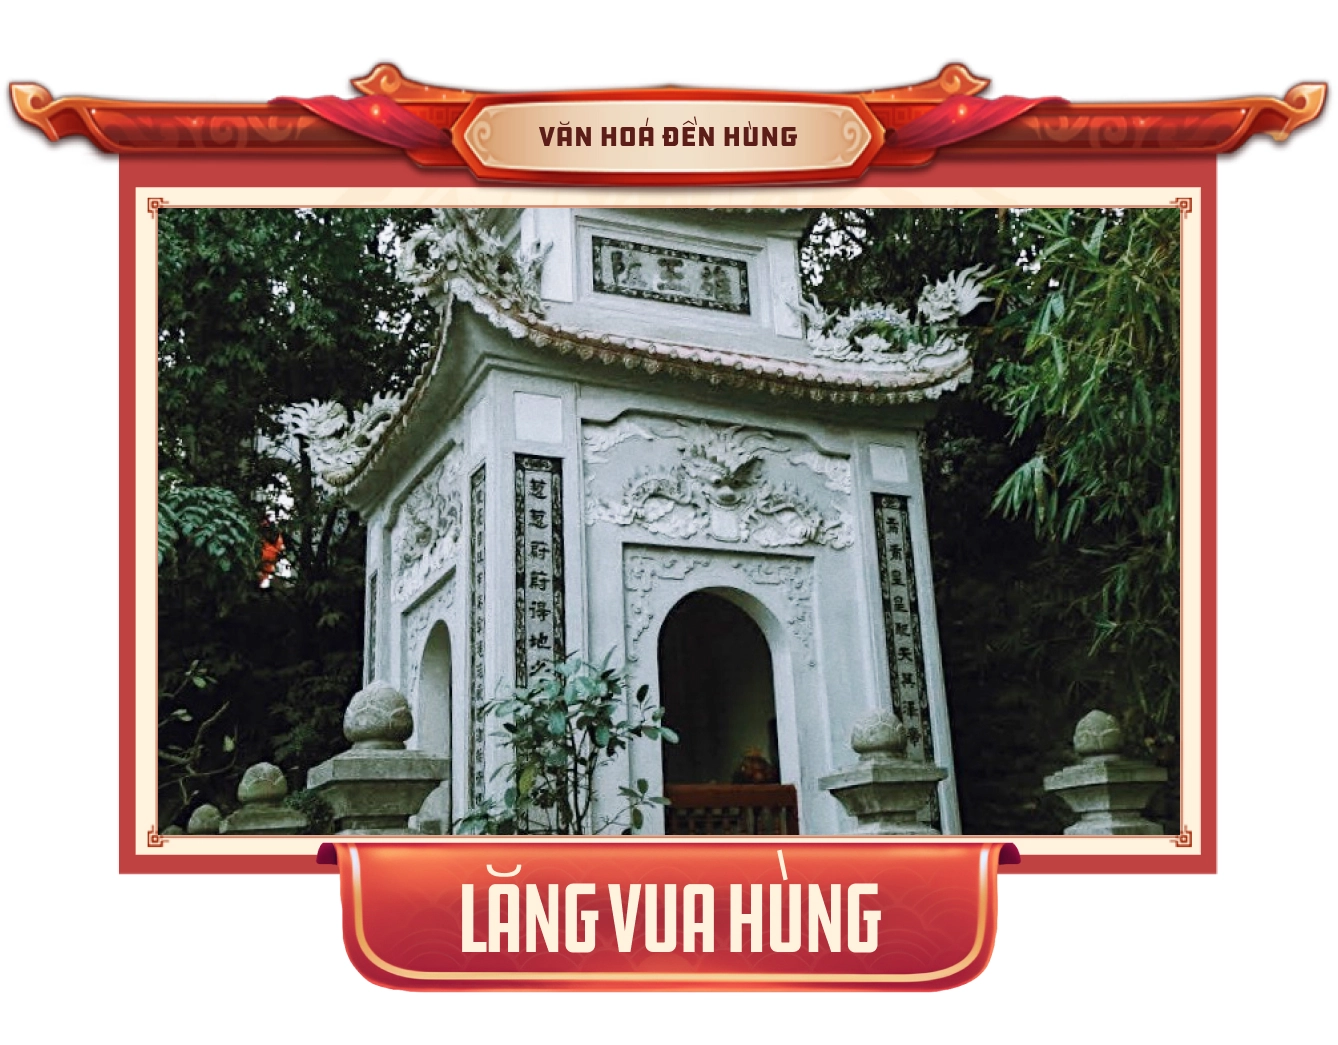 Về với Đền Hùng, về với cội nguồn thấm đượm hồn thiêng sông núi - nơi thờ tự "Thánh vương ngàn đời của người Việt" - Ảnh 11.